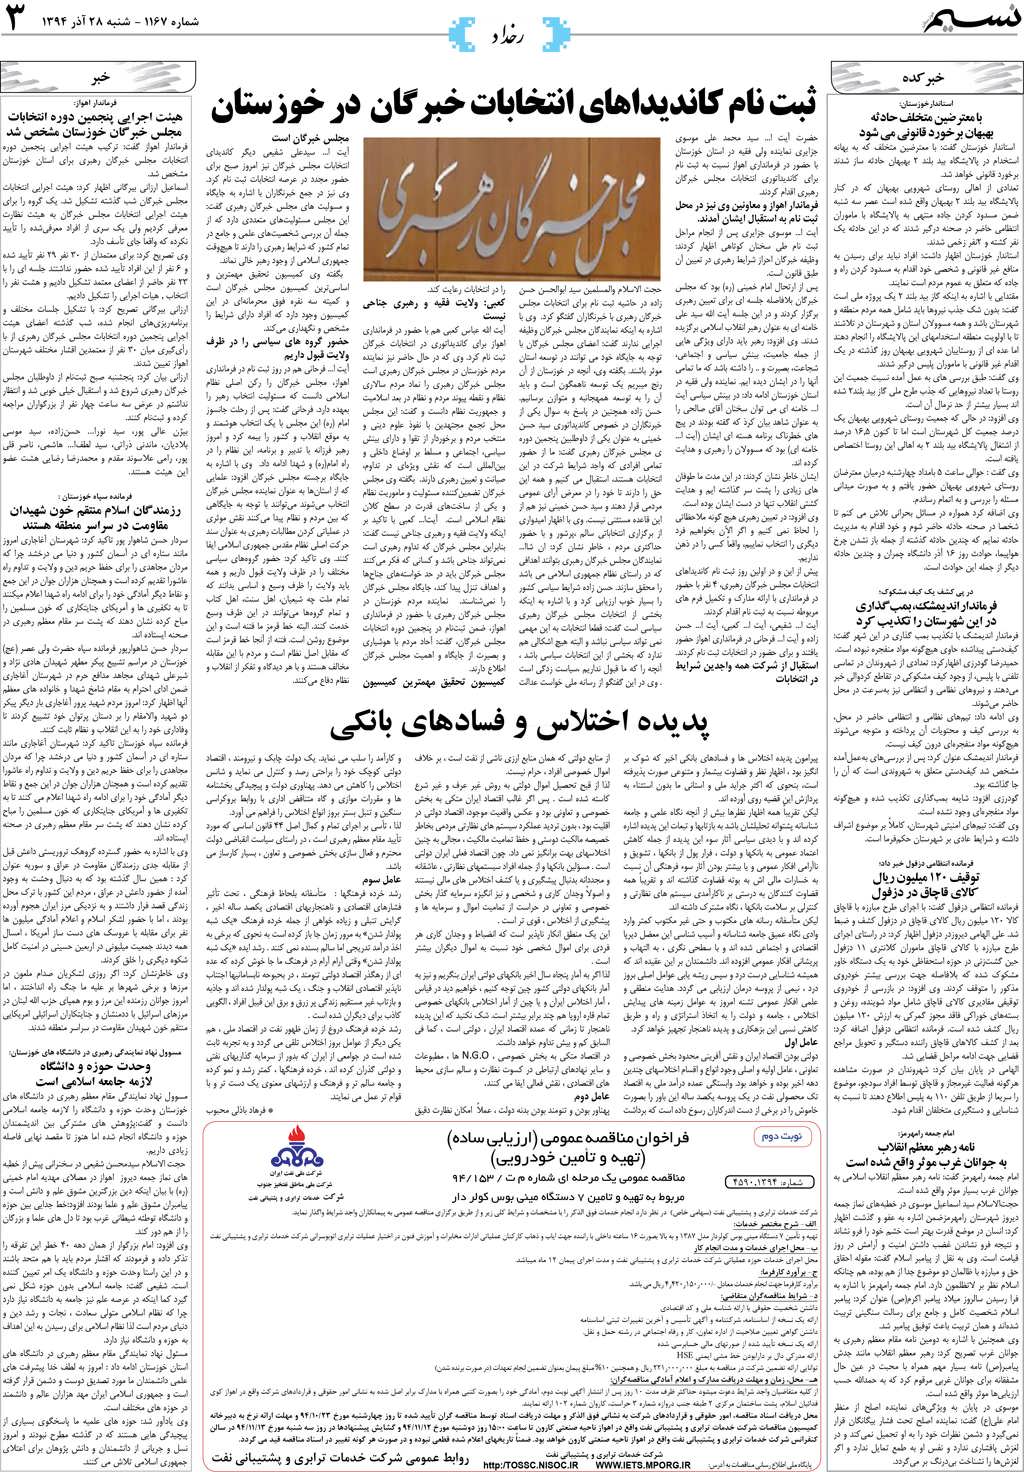 صفحه رخداد روزنامه نسیم شماره 1167